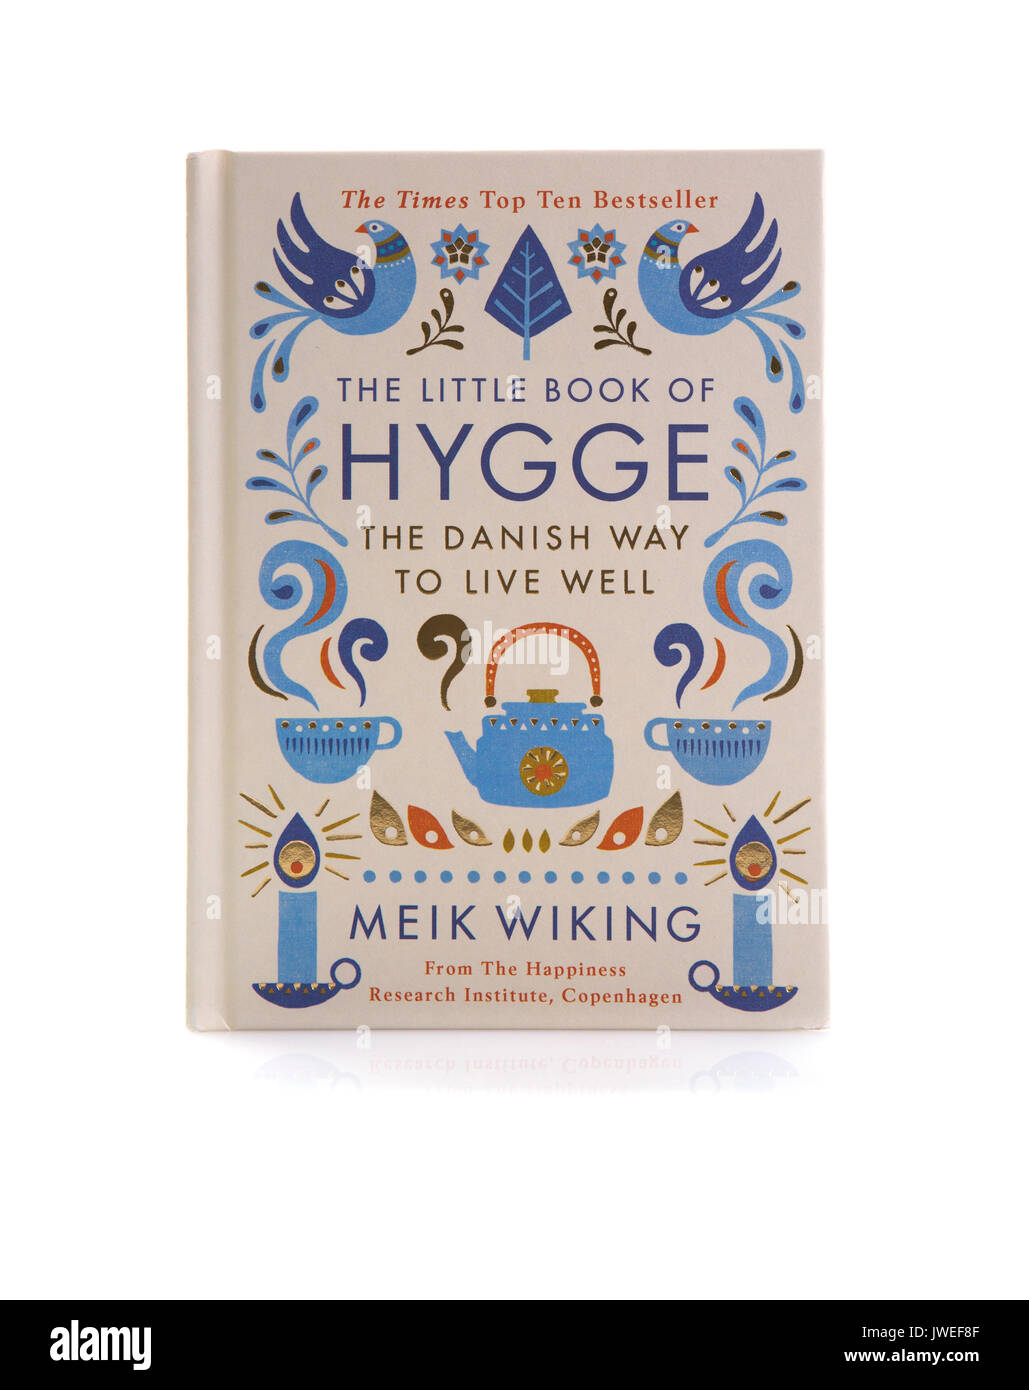 SWINDON, Regno Unito - 12 agosto 2017: il piccolo libro di Hygge, La via danese per vivere bene su sfondo bianco Foto Stock